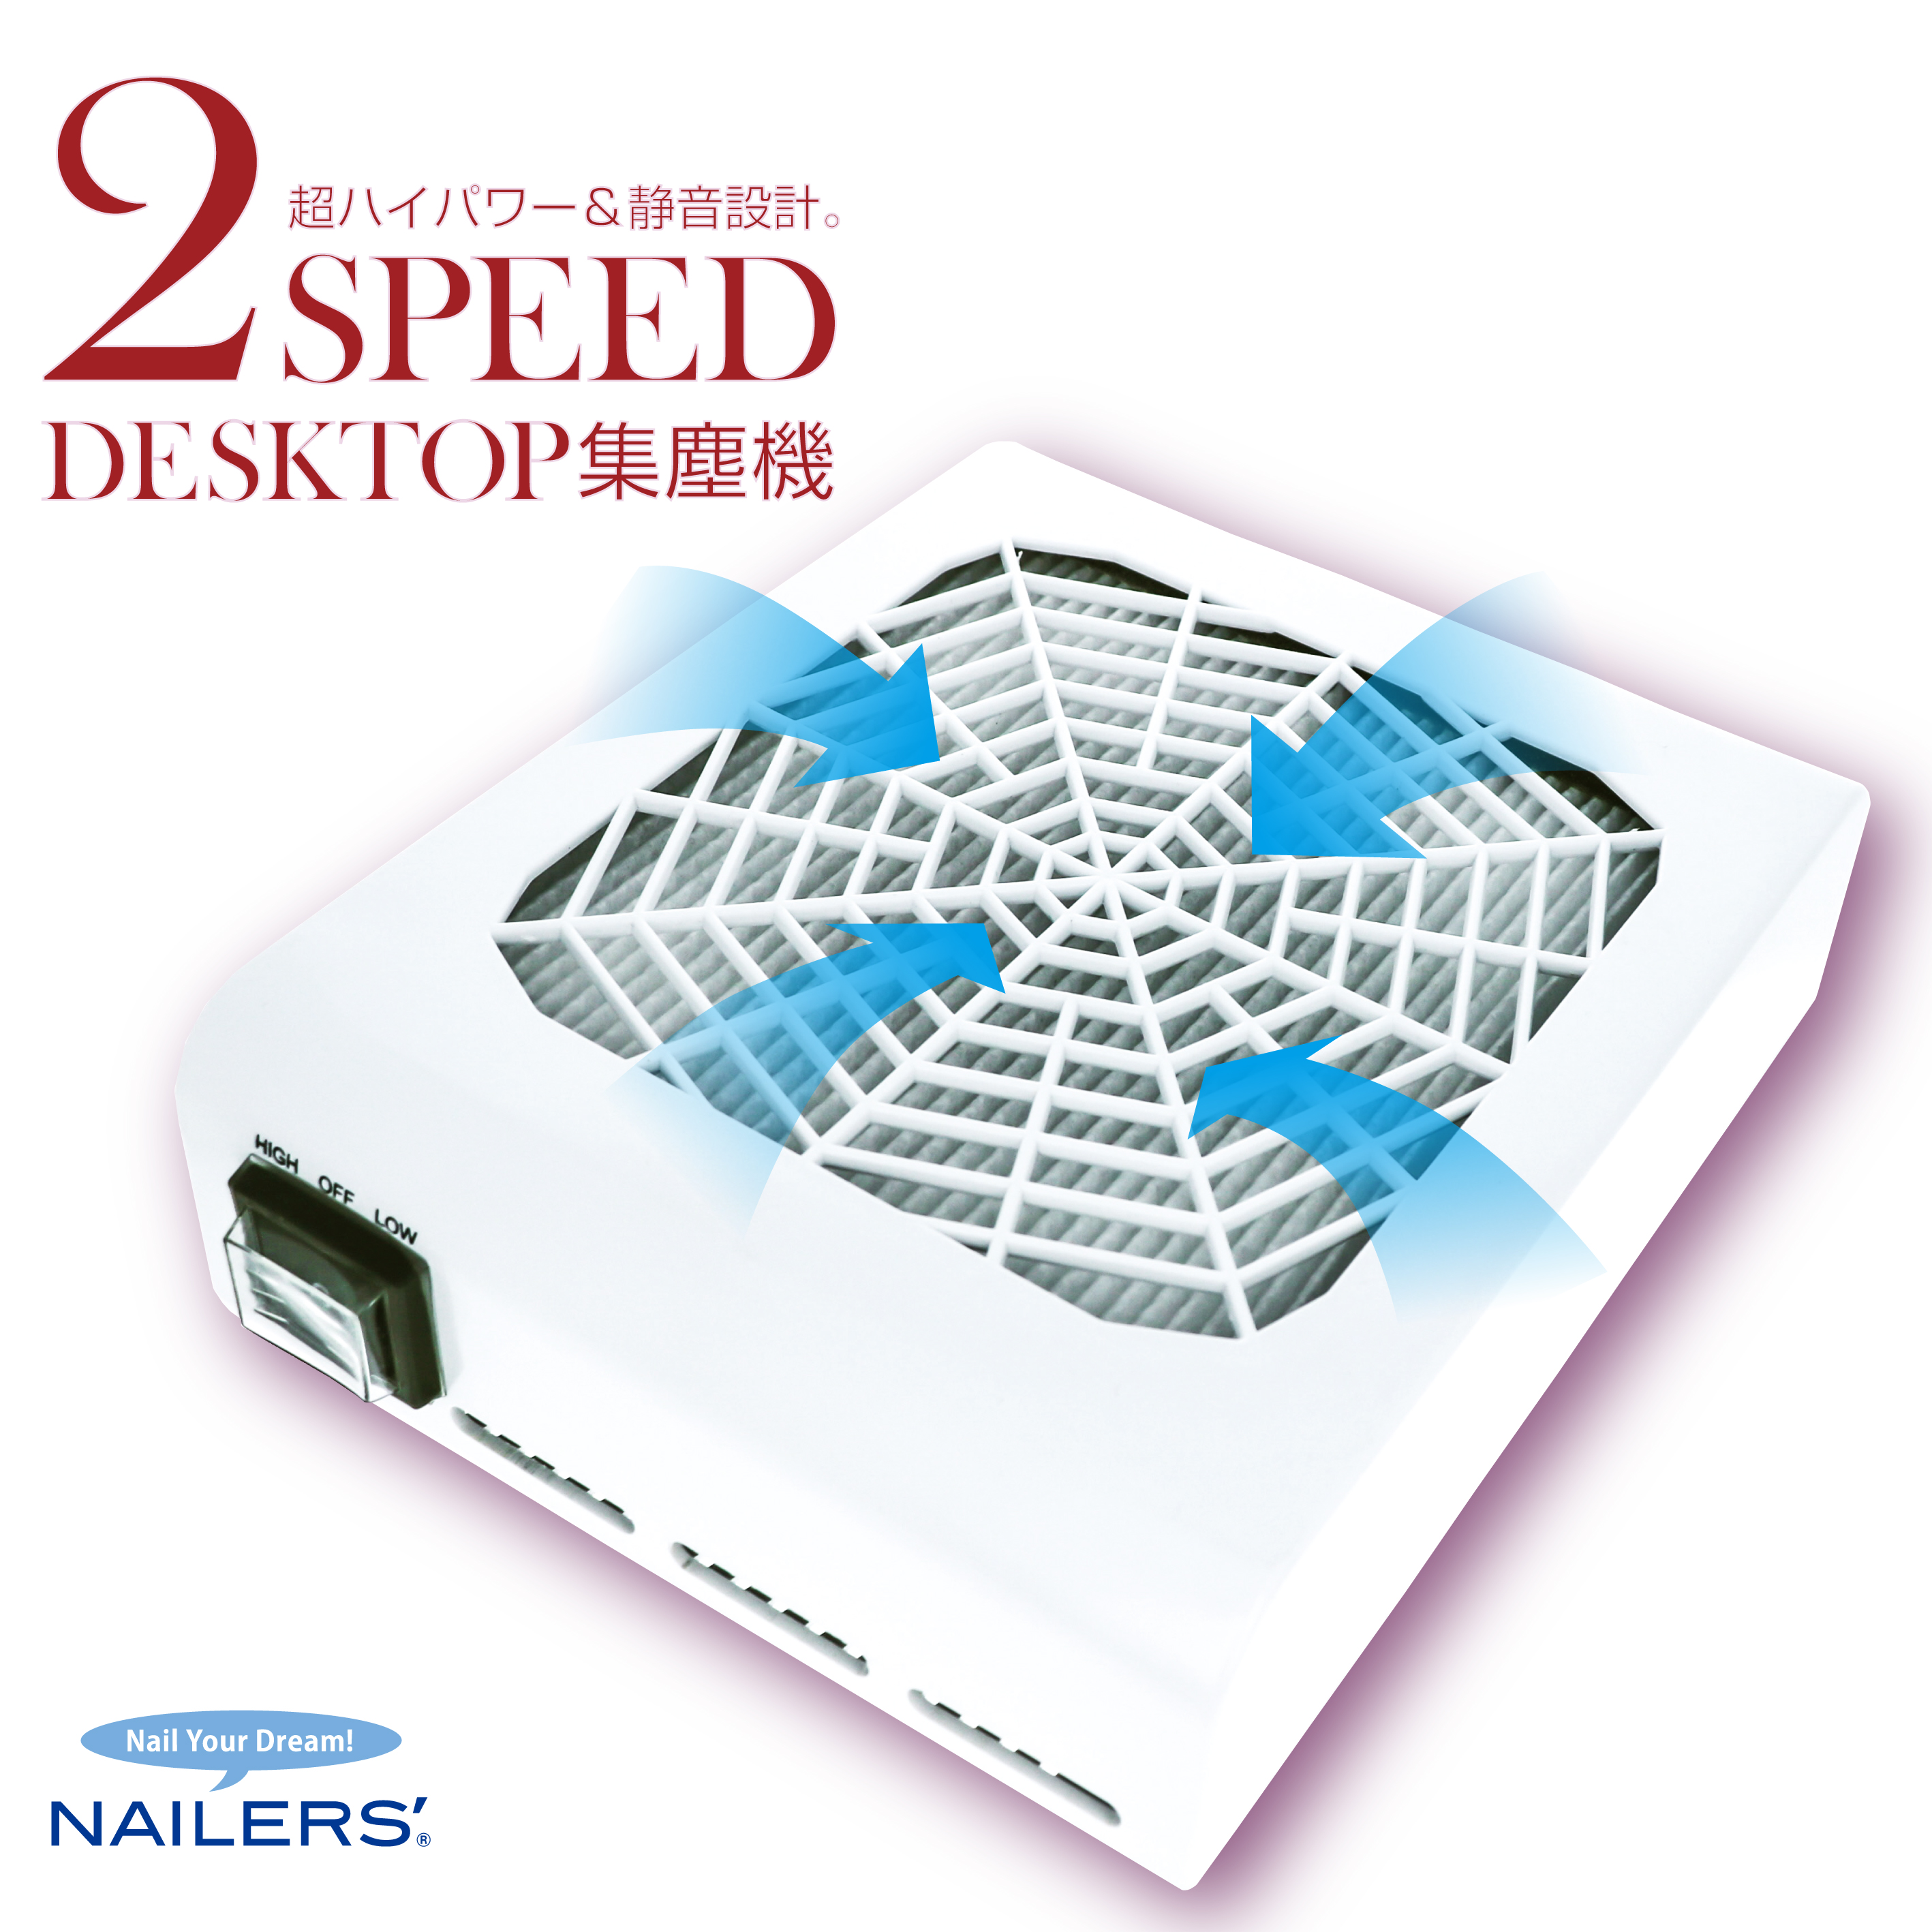 NAILERS' 2スピード デスクトップ集塵機(2DT-2)画像